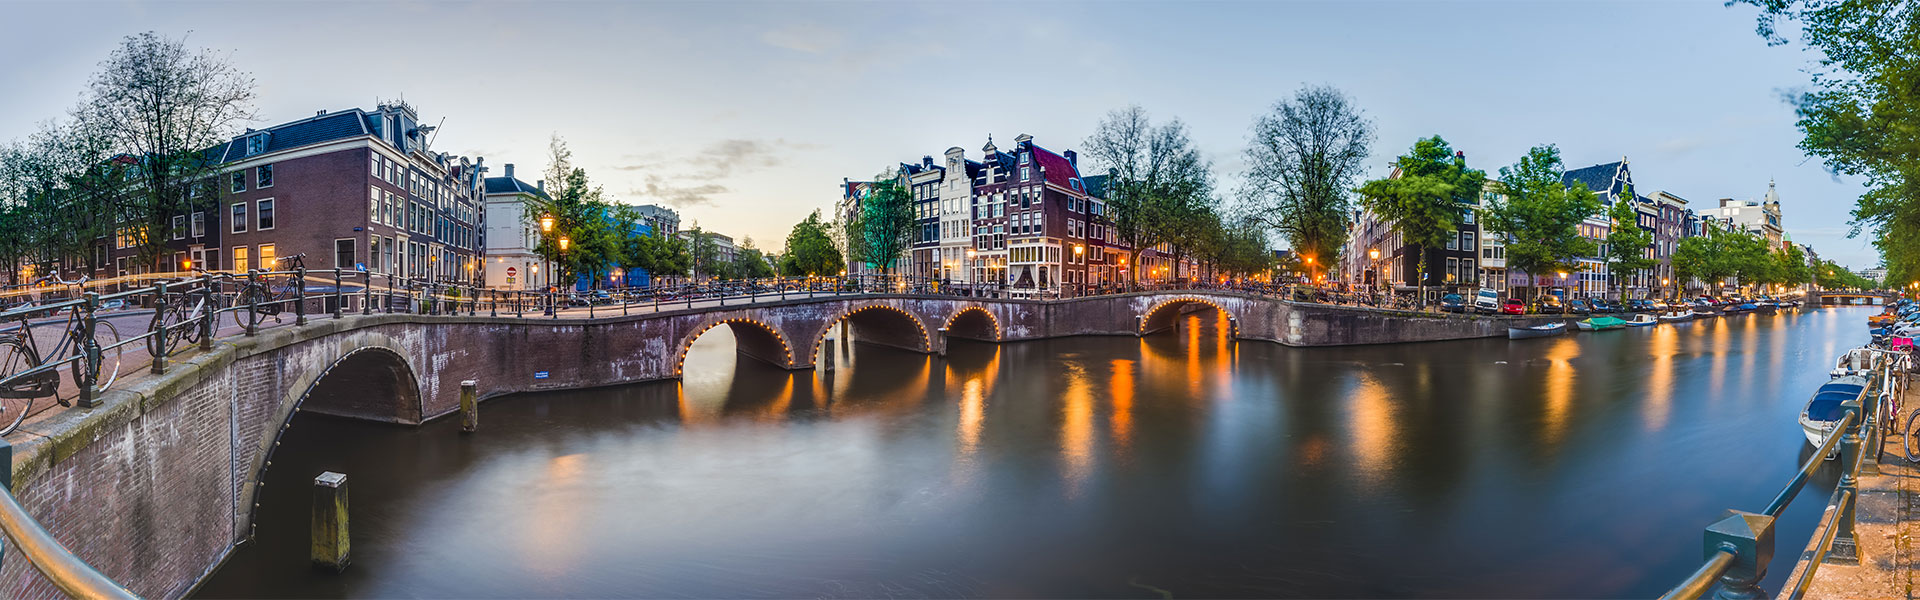 Holland város alkonyatban, híddal a vízen